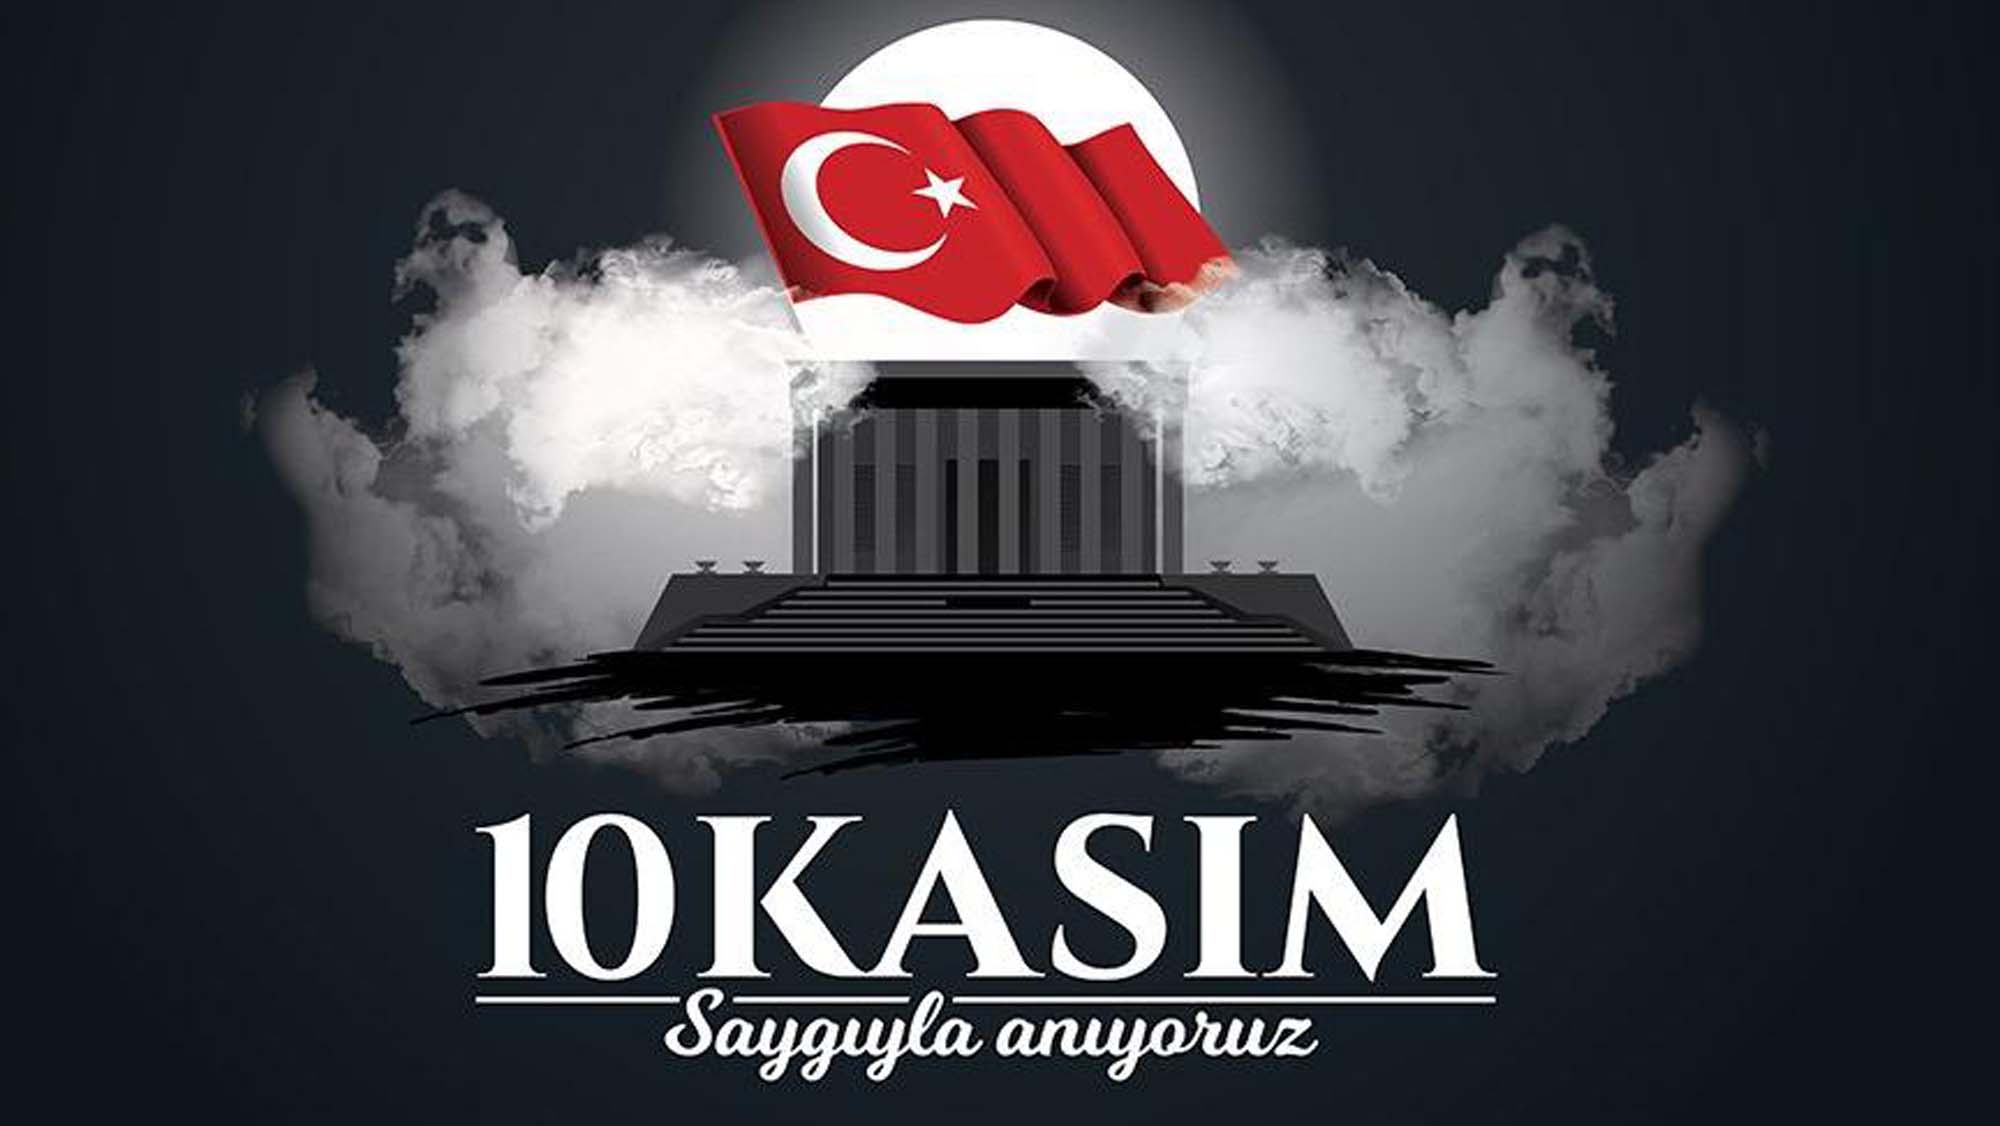 10 Kasım Atatürk'ü Anma ile ilgili yazılar 2021 |10 Kasımla ilgili anlamlı yazılar